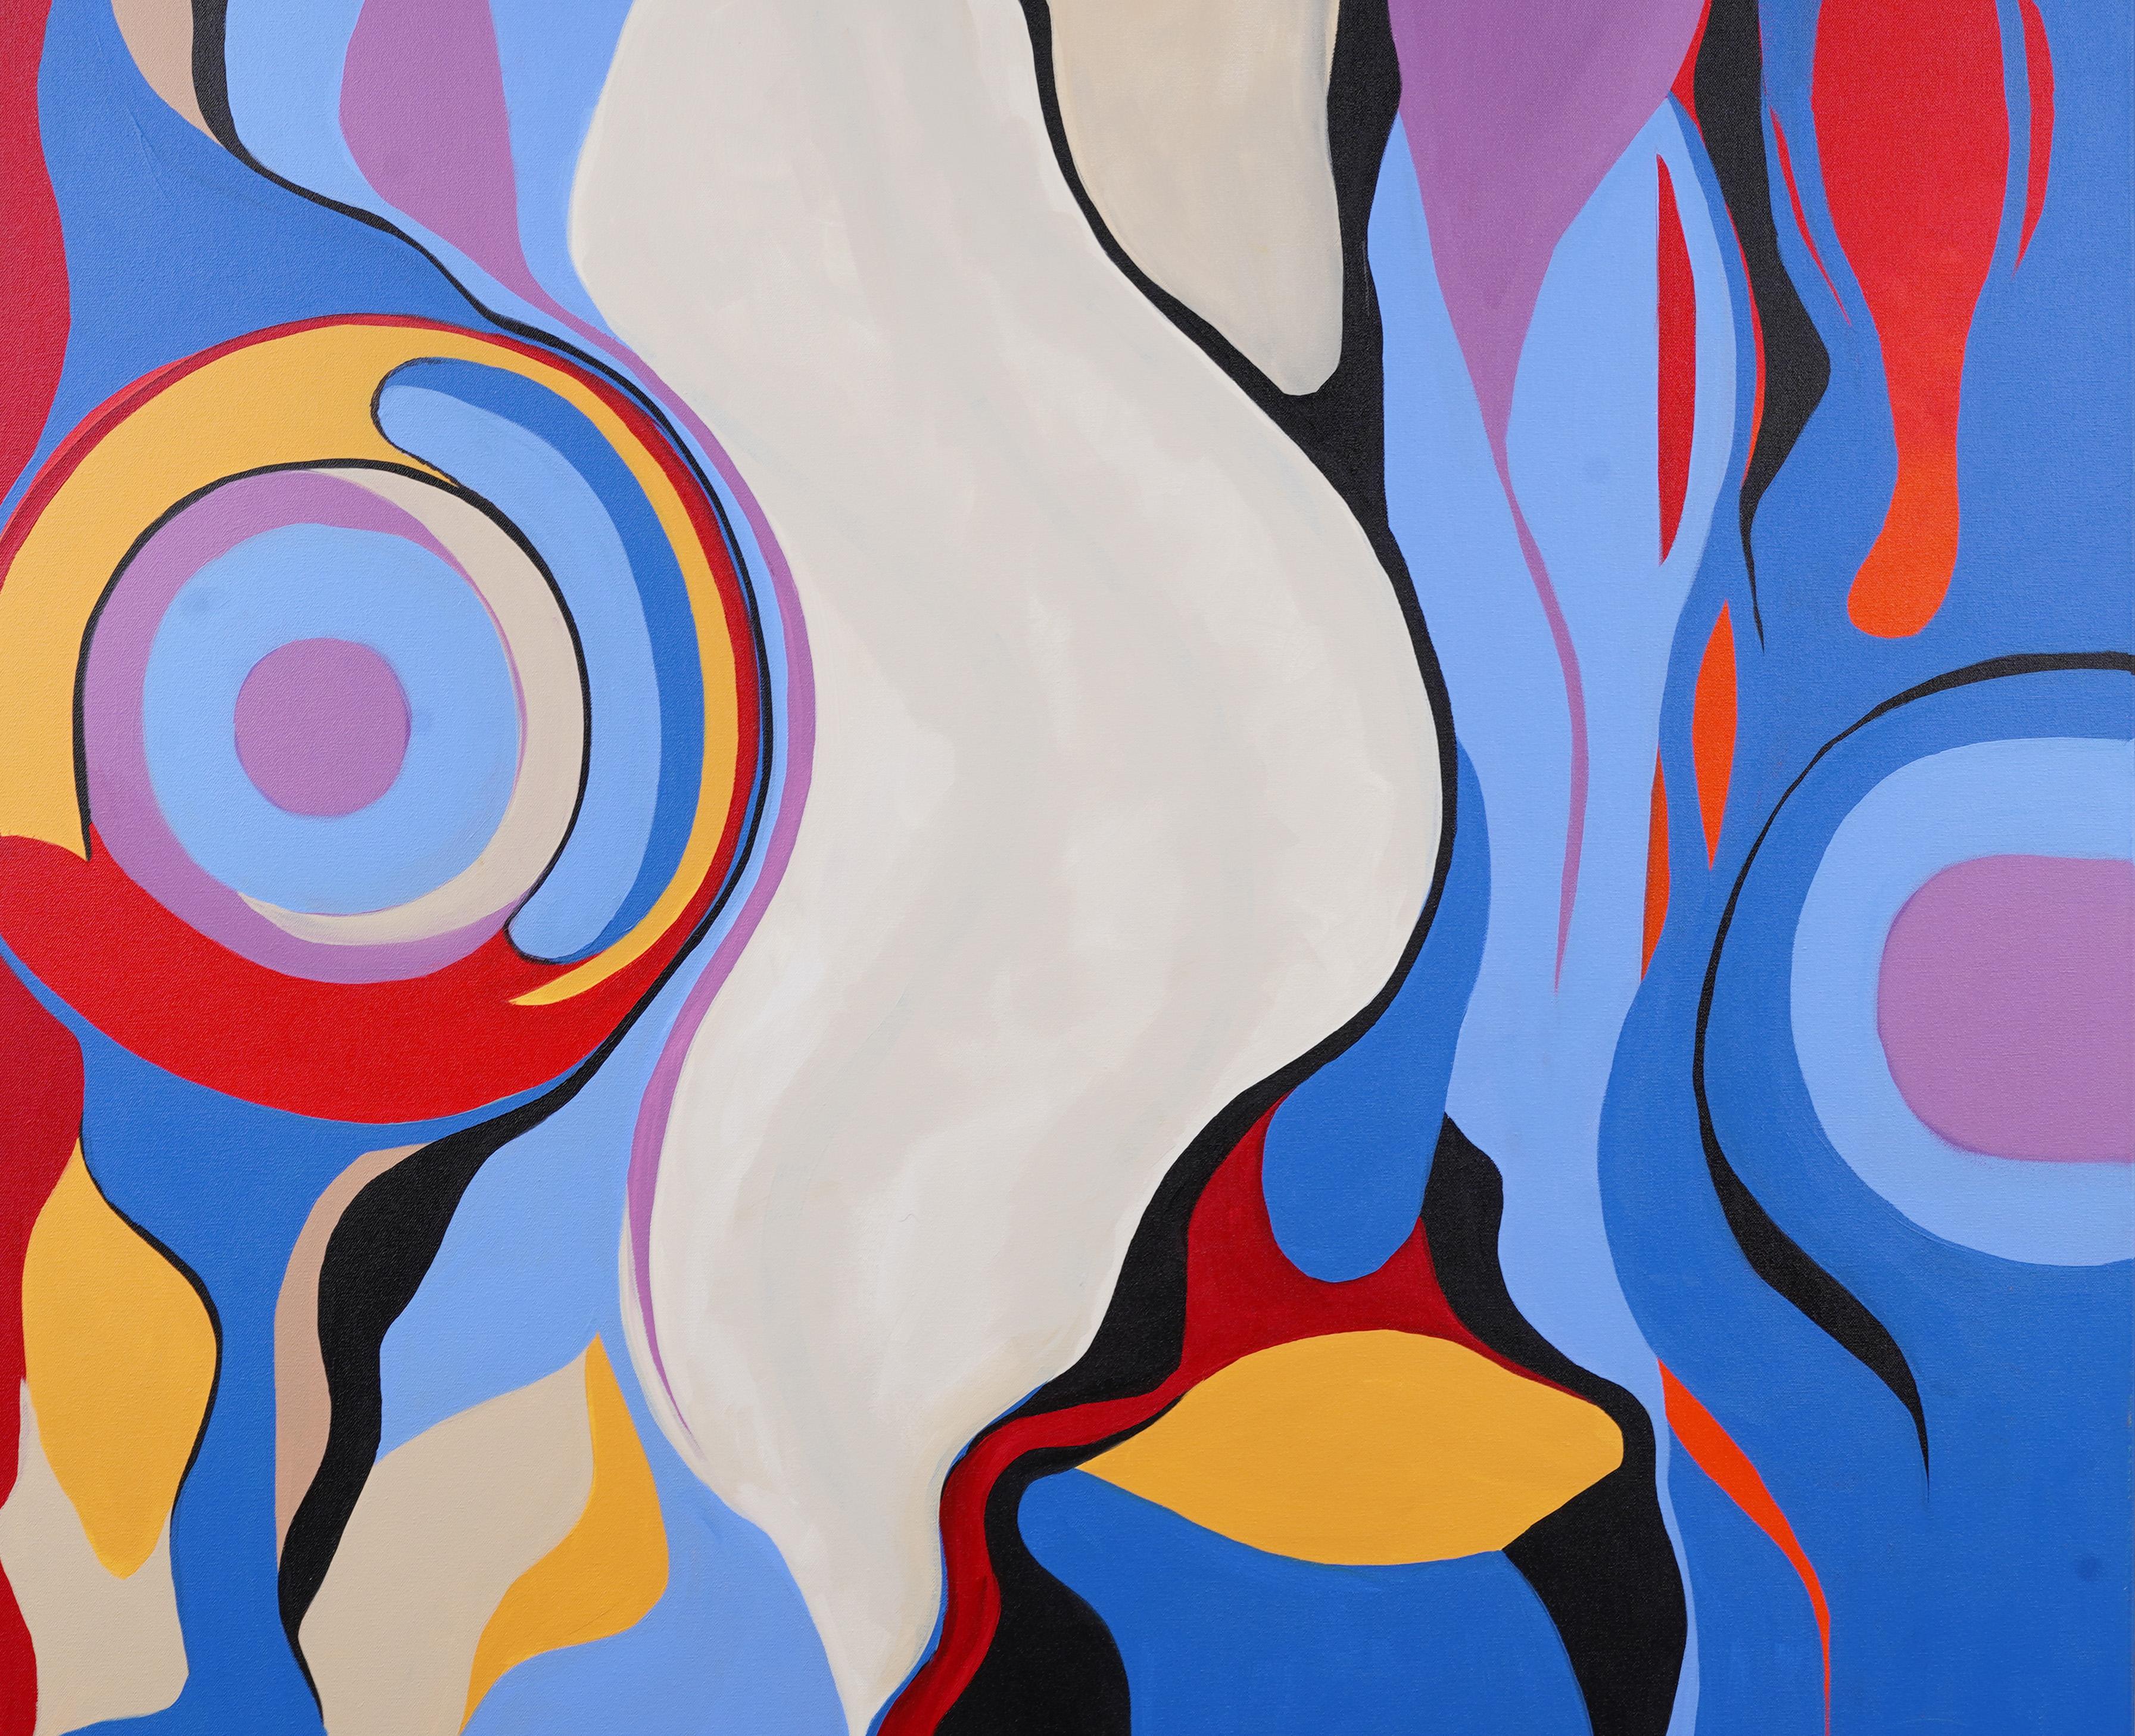 Grande et impressionnante peinture moderniste de Barbara Krupp. Un artiste important et bien répertorié. Les couleurs et le mouvement de cette peinture sont magnifiques. Huile sur toile. Signé.
